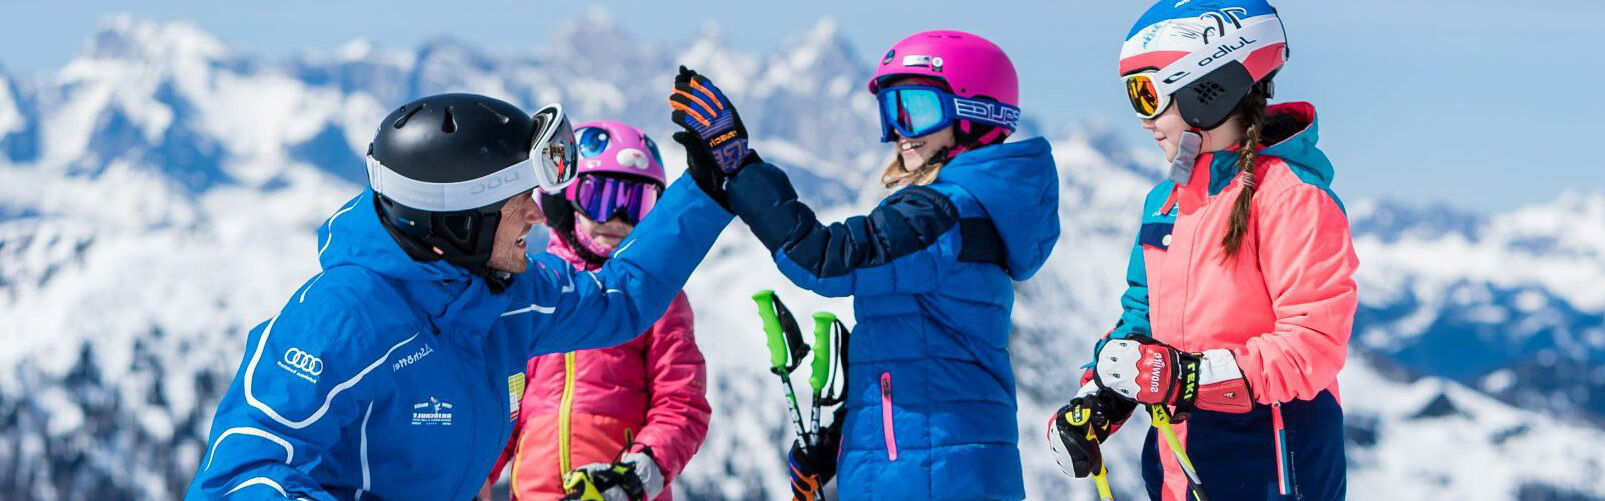 Skischool Flachau - familieskischool - cursussen voor kinderen ski vanaf 3 jaar